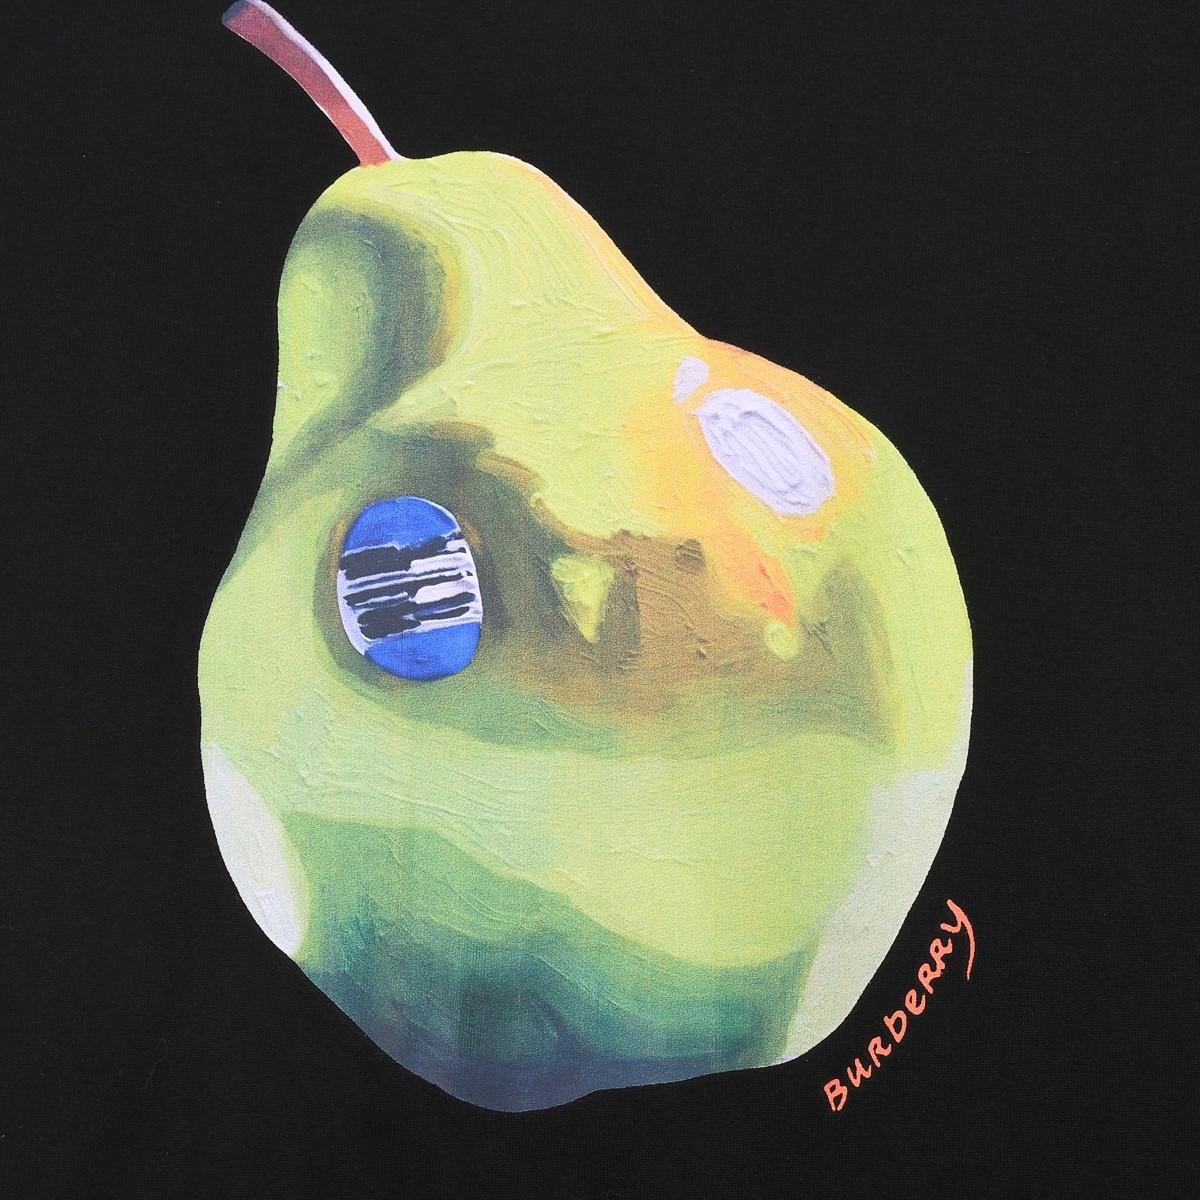 Burberry Pear Cotton T-shirt  - DesignerGu